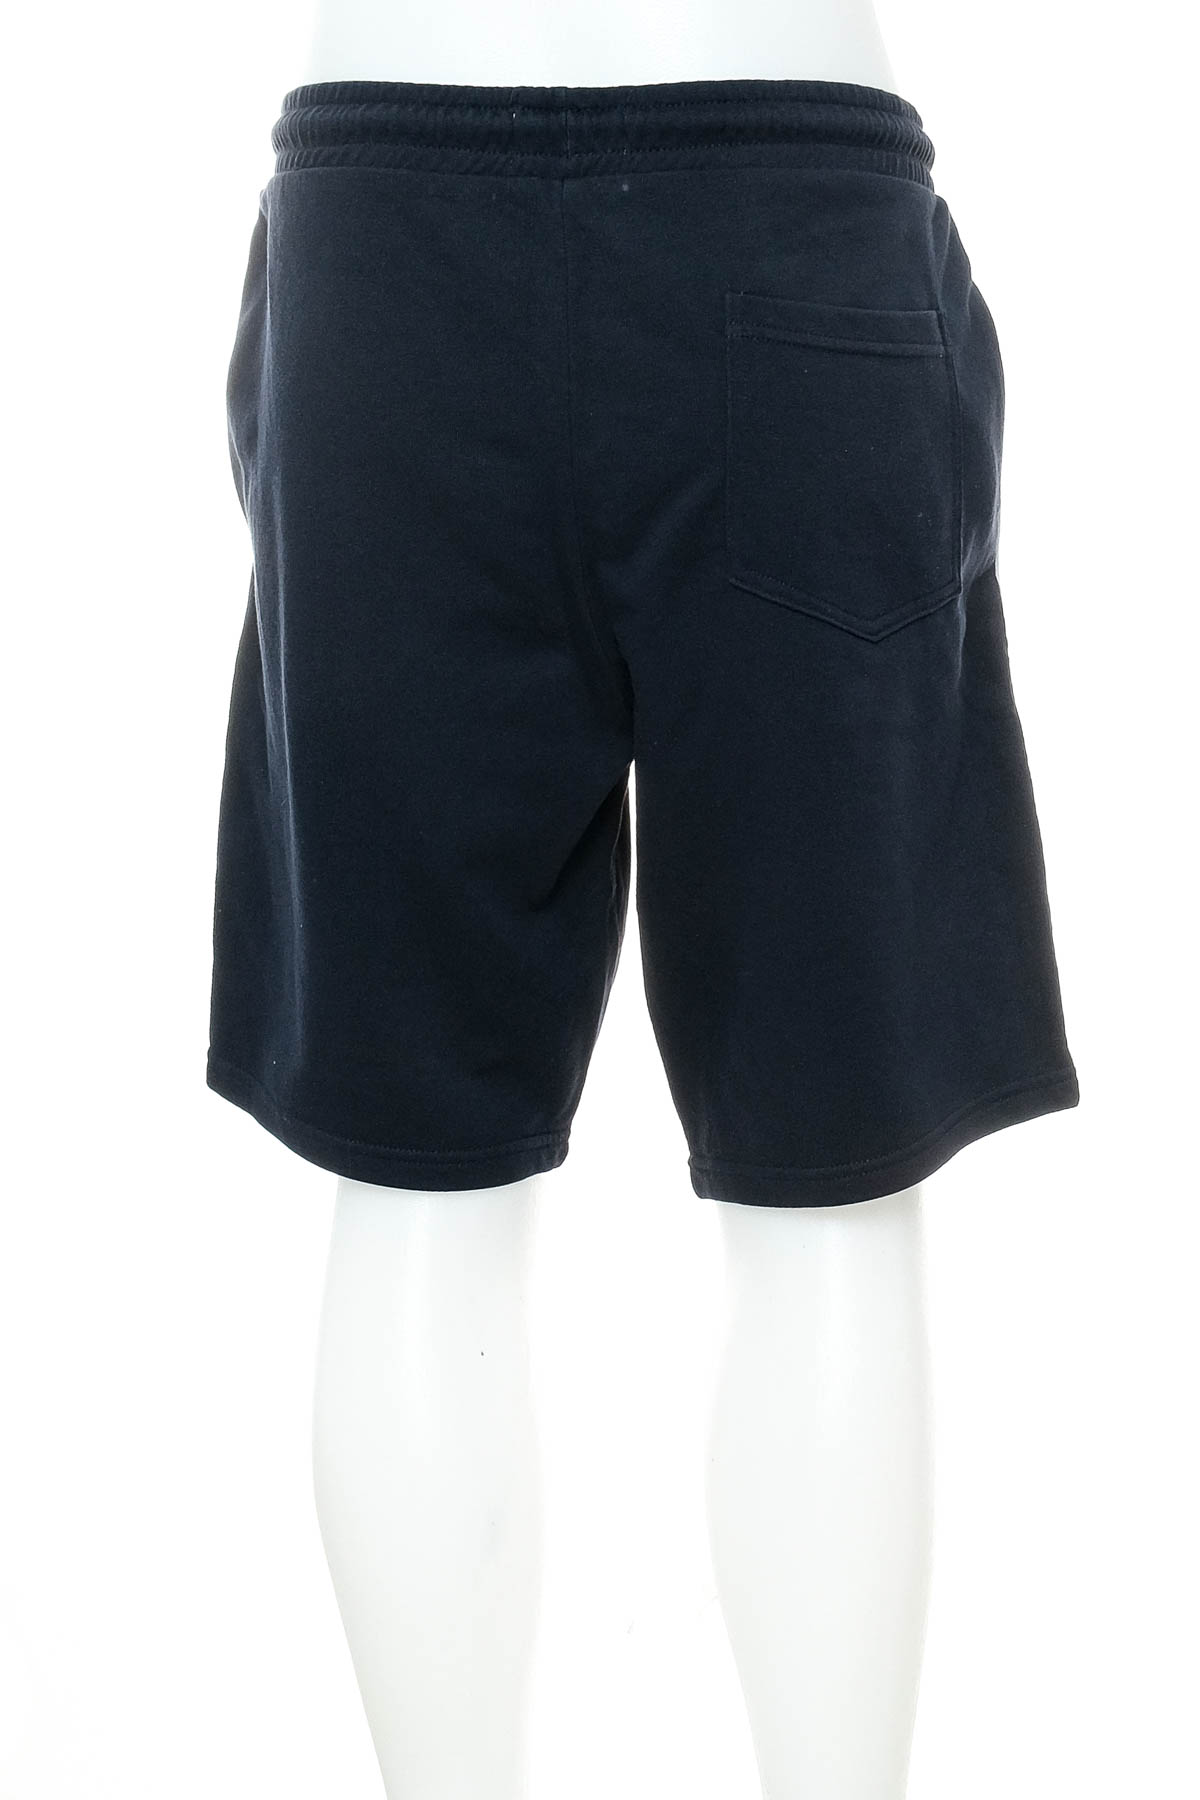 Men's shorts - C&A - 1